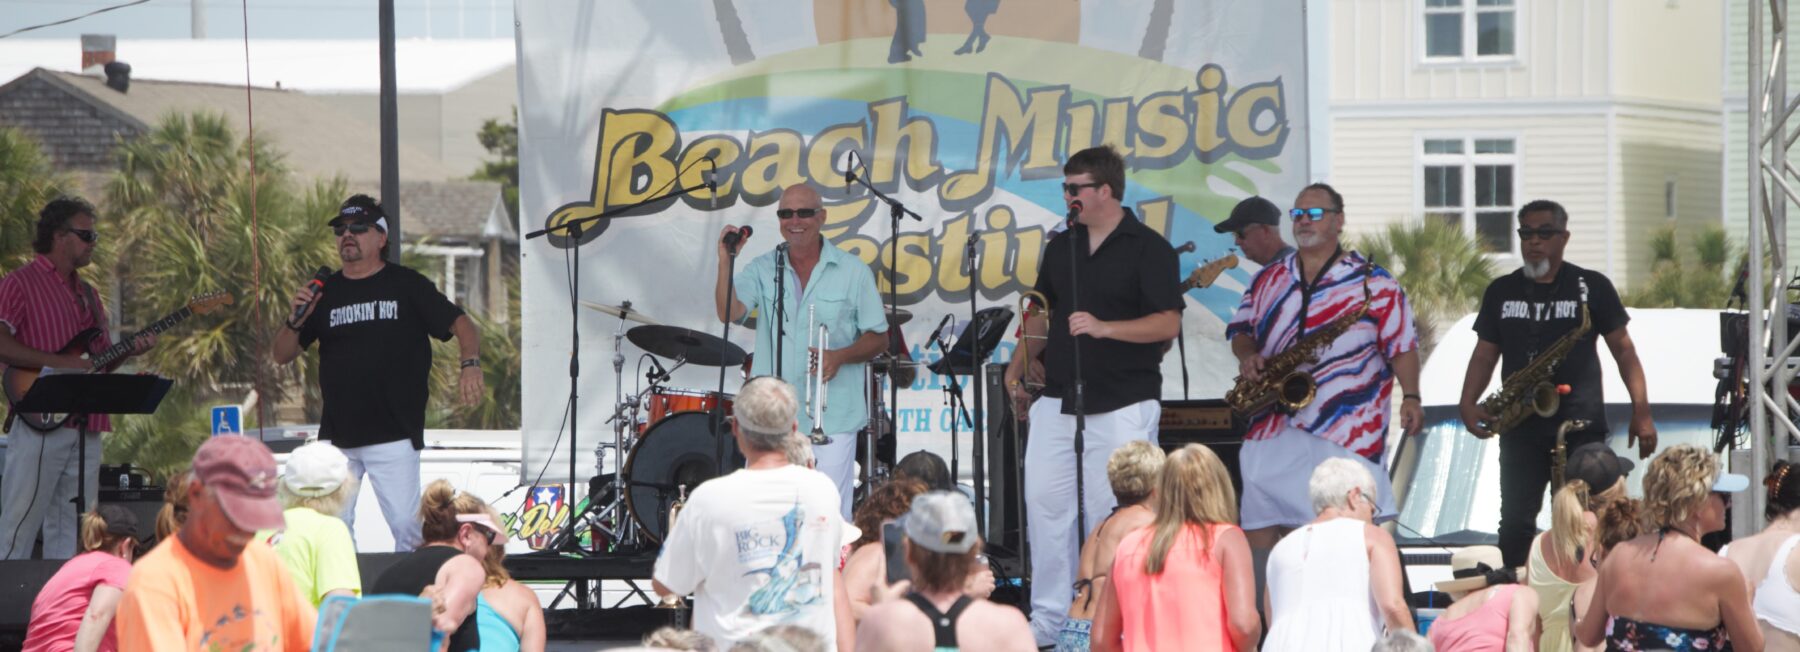 Beach Music Festival